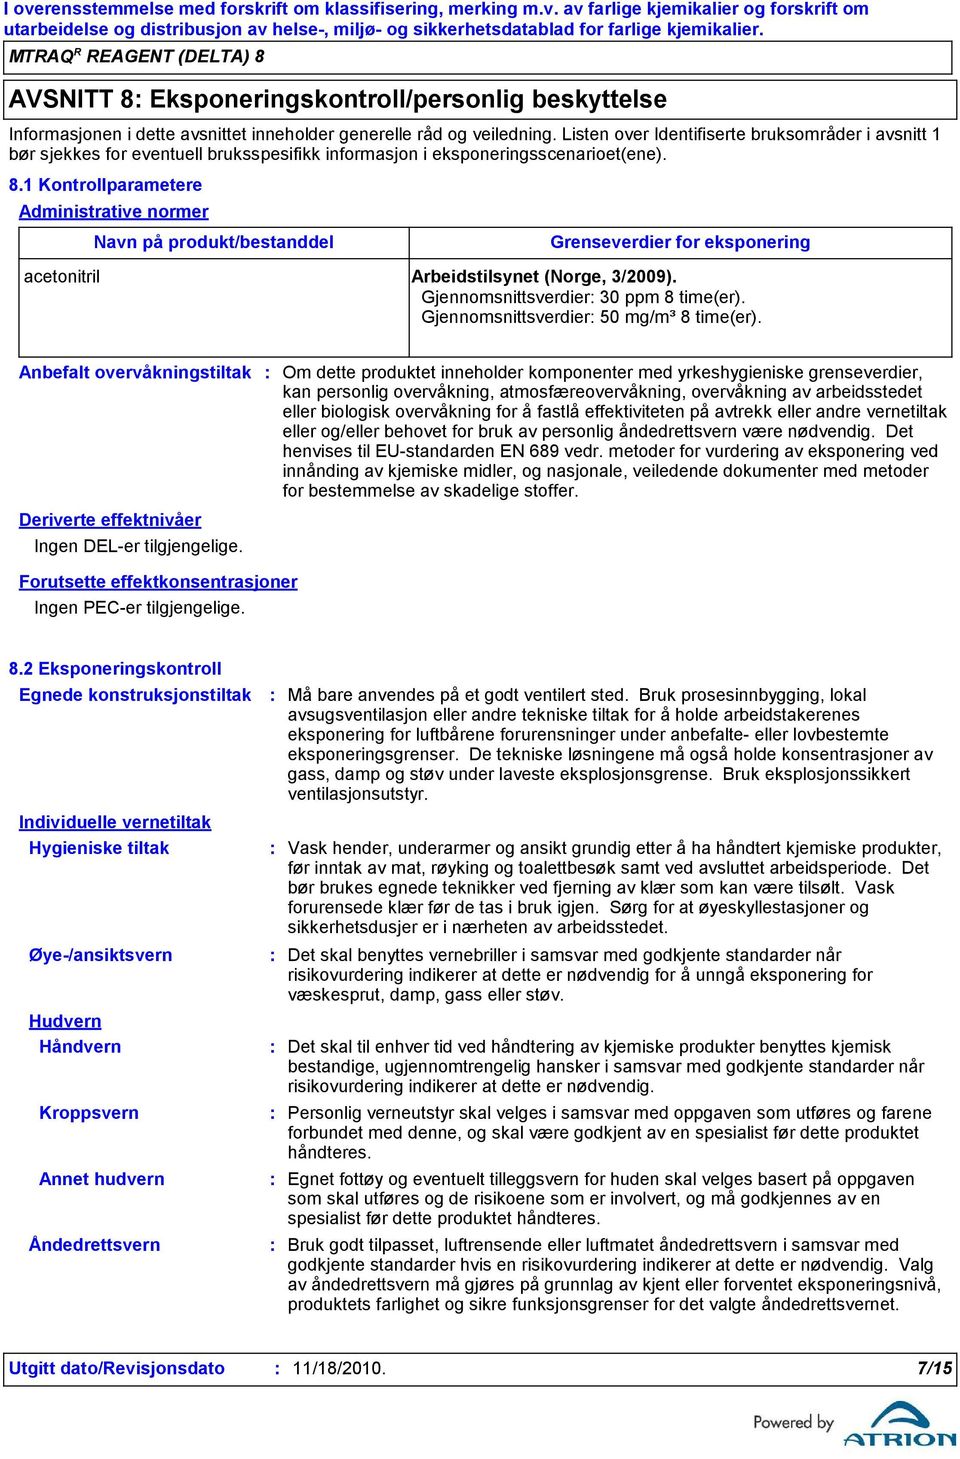 1 Kontrollparametere Administrative normer Navn på produkt/bestanddel Grenseverdier for eksponering acetonitril Arbeidstilsynet (Norge, 3/2009). Gjennomsnittsverdier 30 ppm 8 time(er).